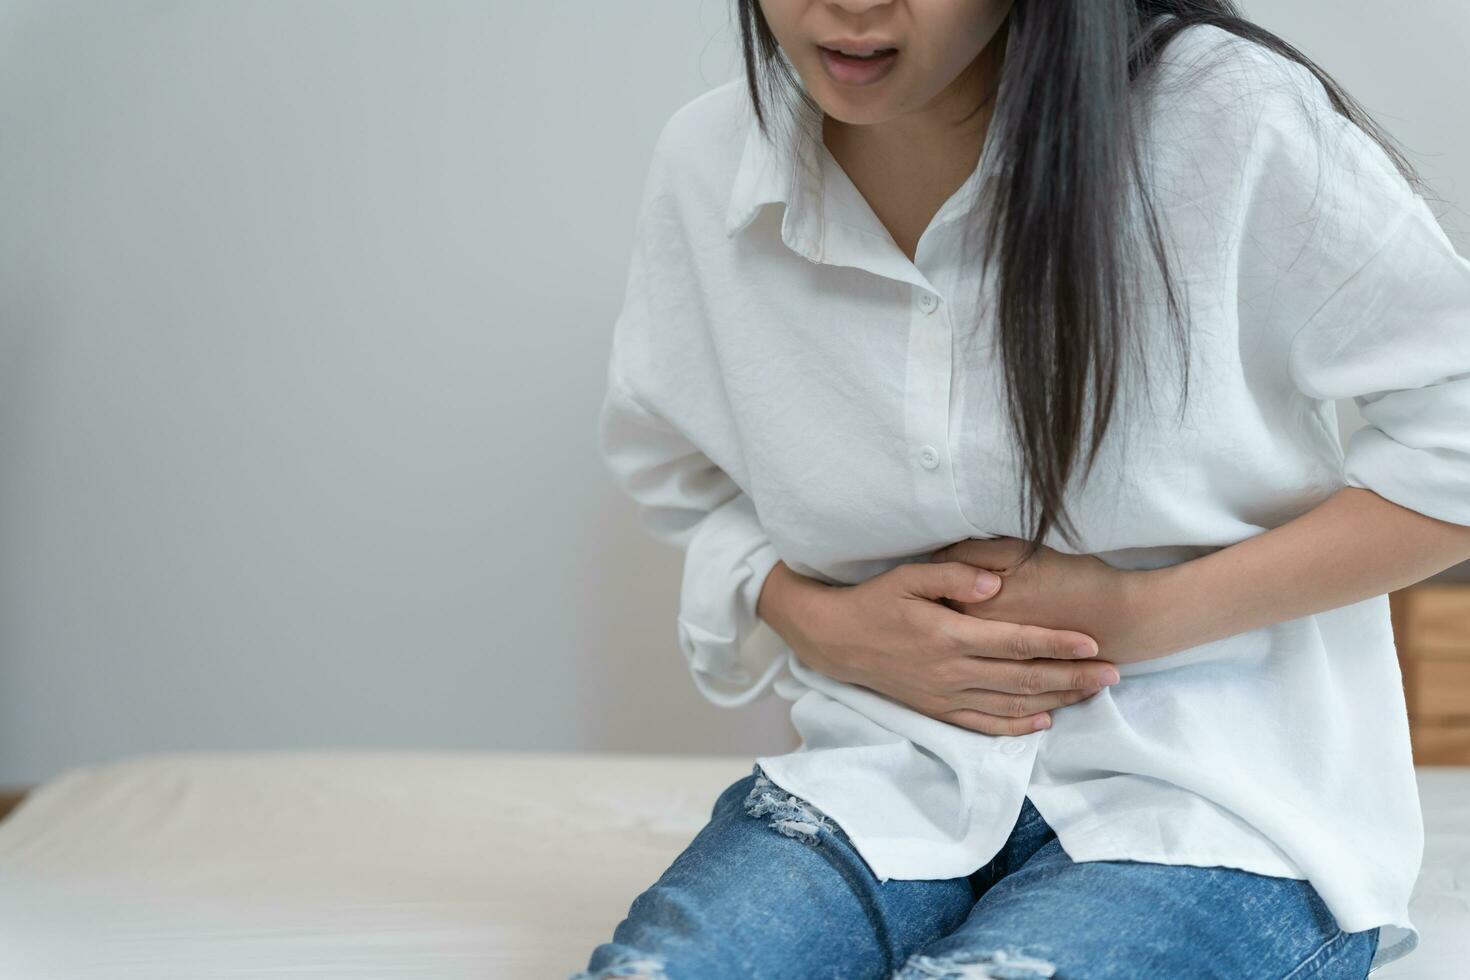 dor de estômago. mulheres asiáticas têm dor abdominal, indigestão, gastrite, cólicas menstruais, flatulência, diarreia, distensão, câncer de cólon, problema de inflamação da barriga, sofrem intoxicação alimentar, abdômen foto